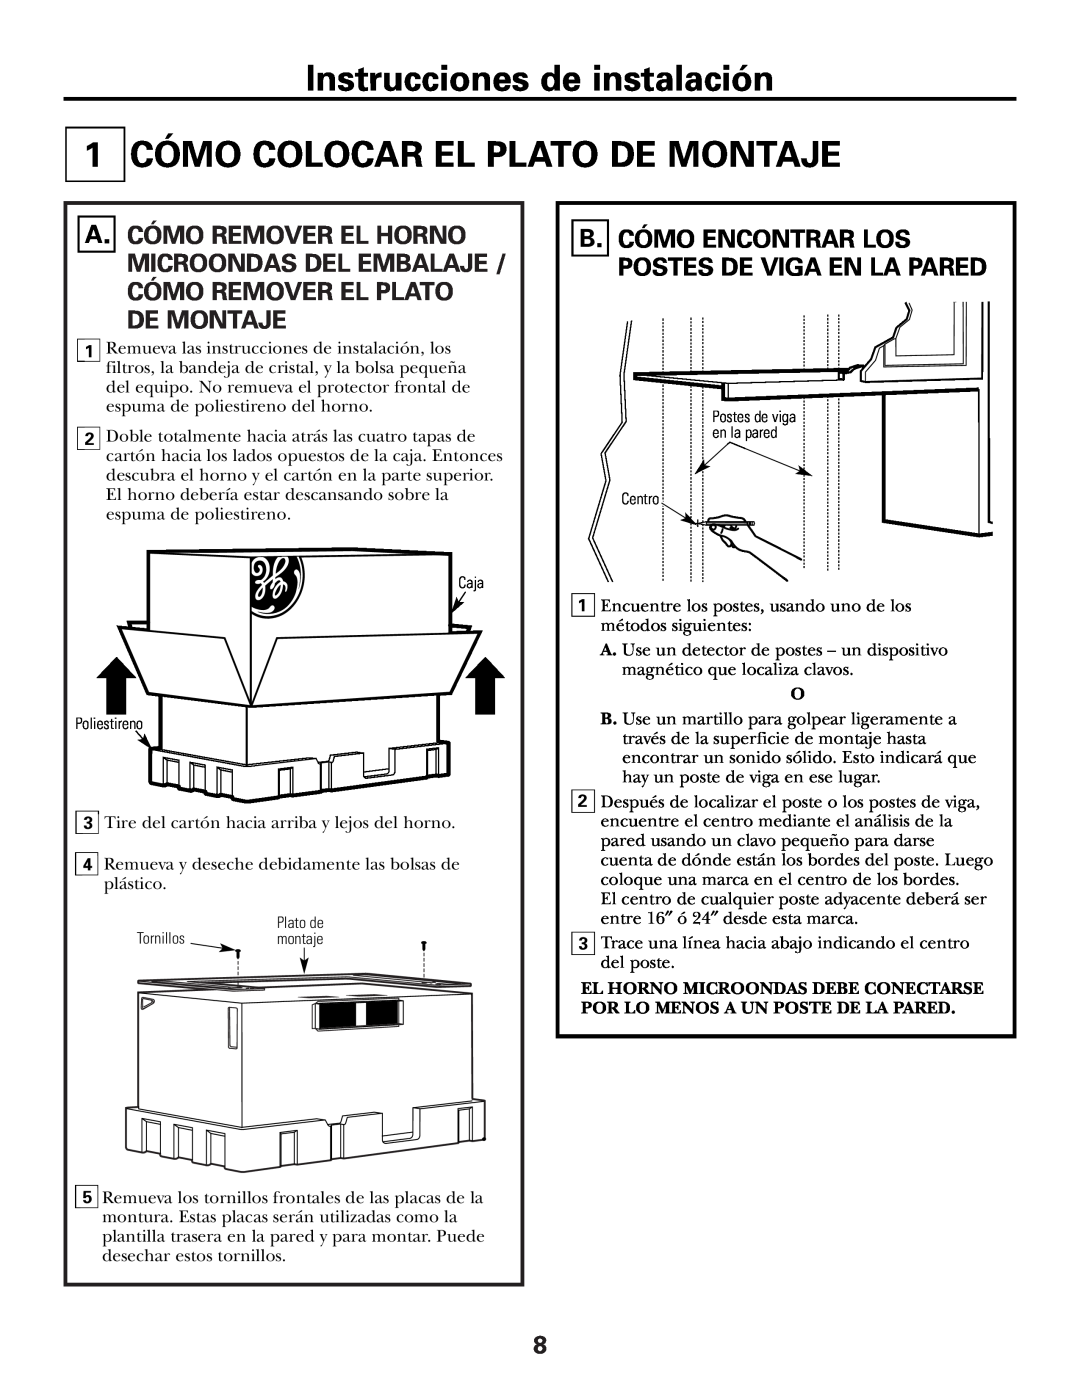 GE CVM2072 Instrucciones de instalación CÓMO COLOCAR EL PLATO DE MONTAJE, B. Cómo Encontrar Los Postes De Viga En La Pared 